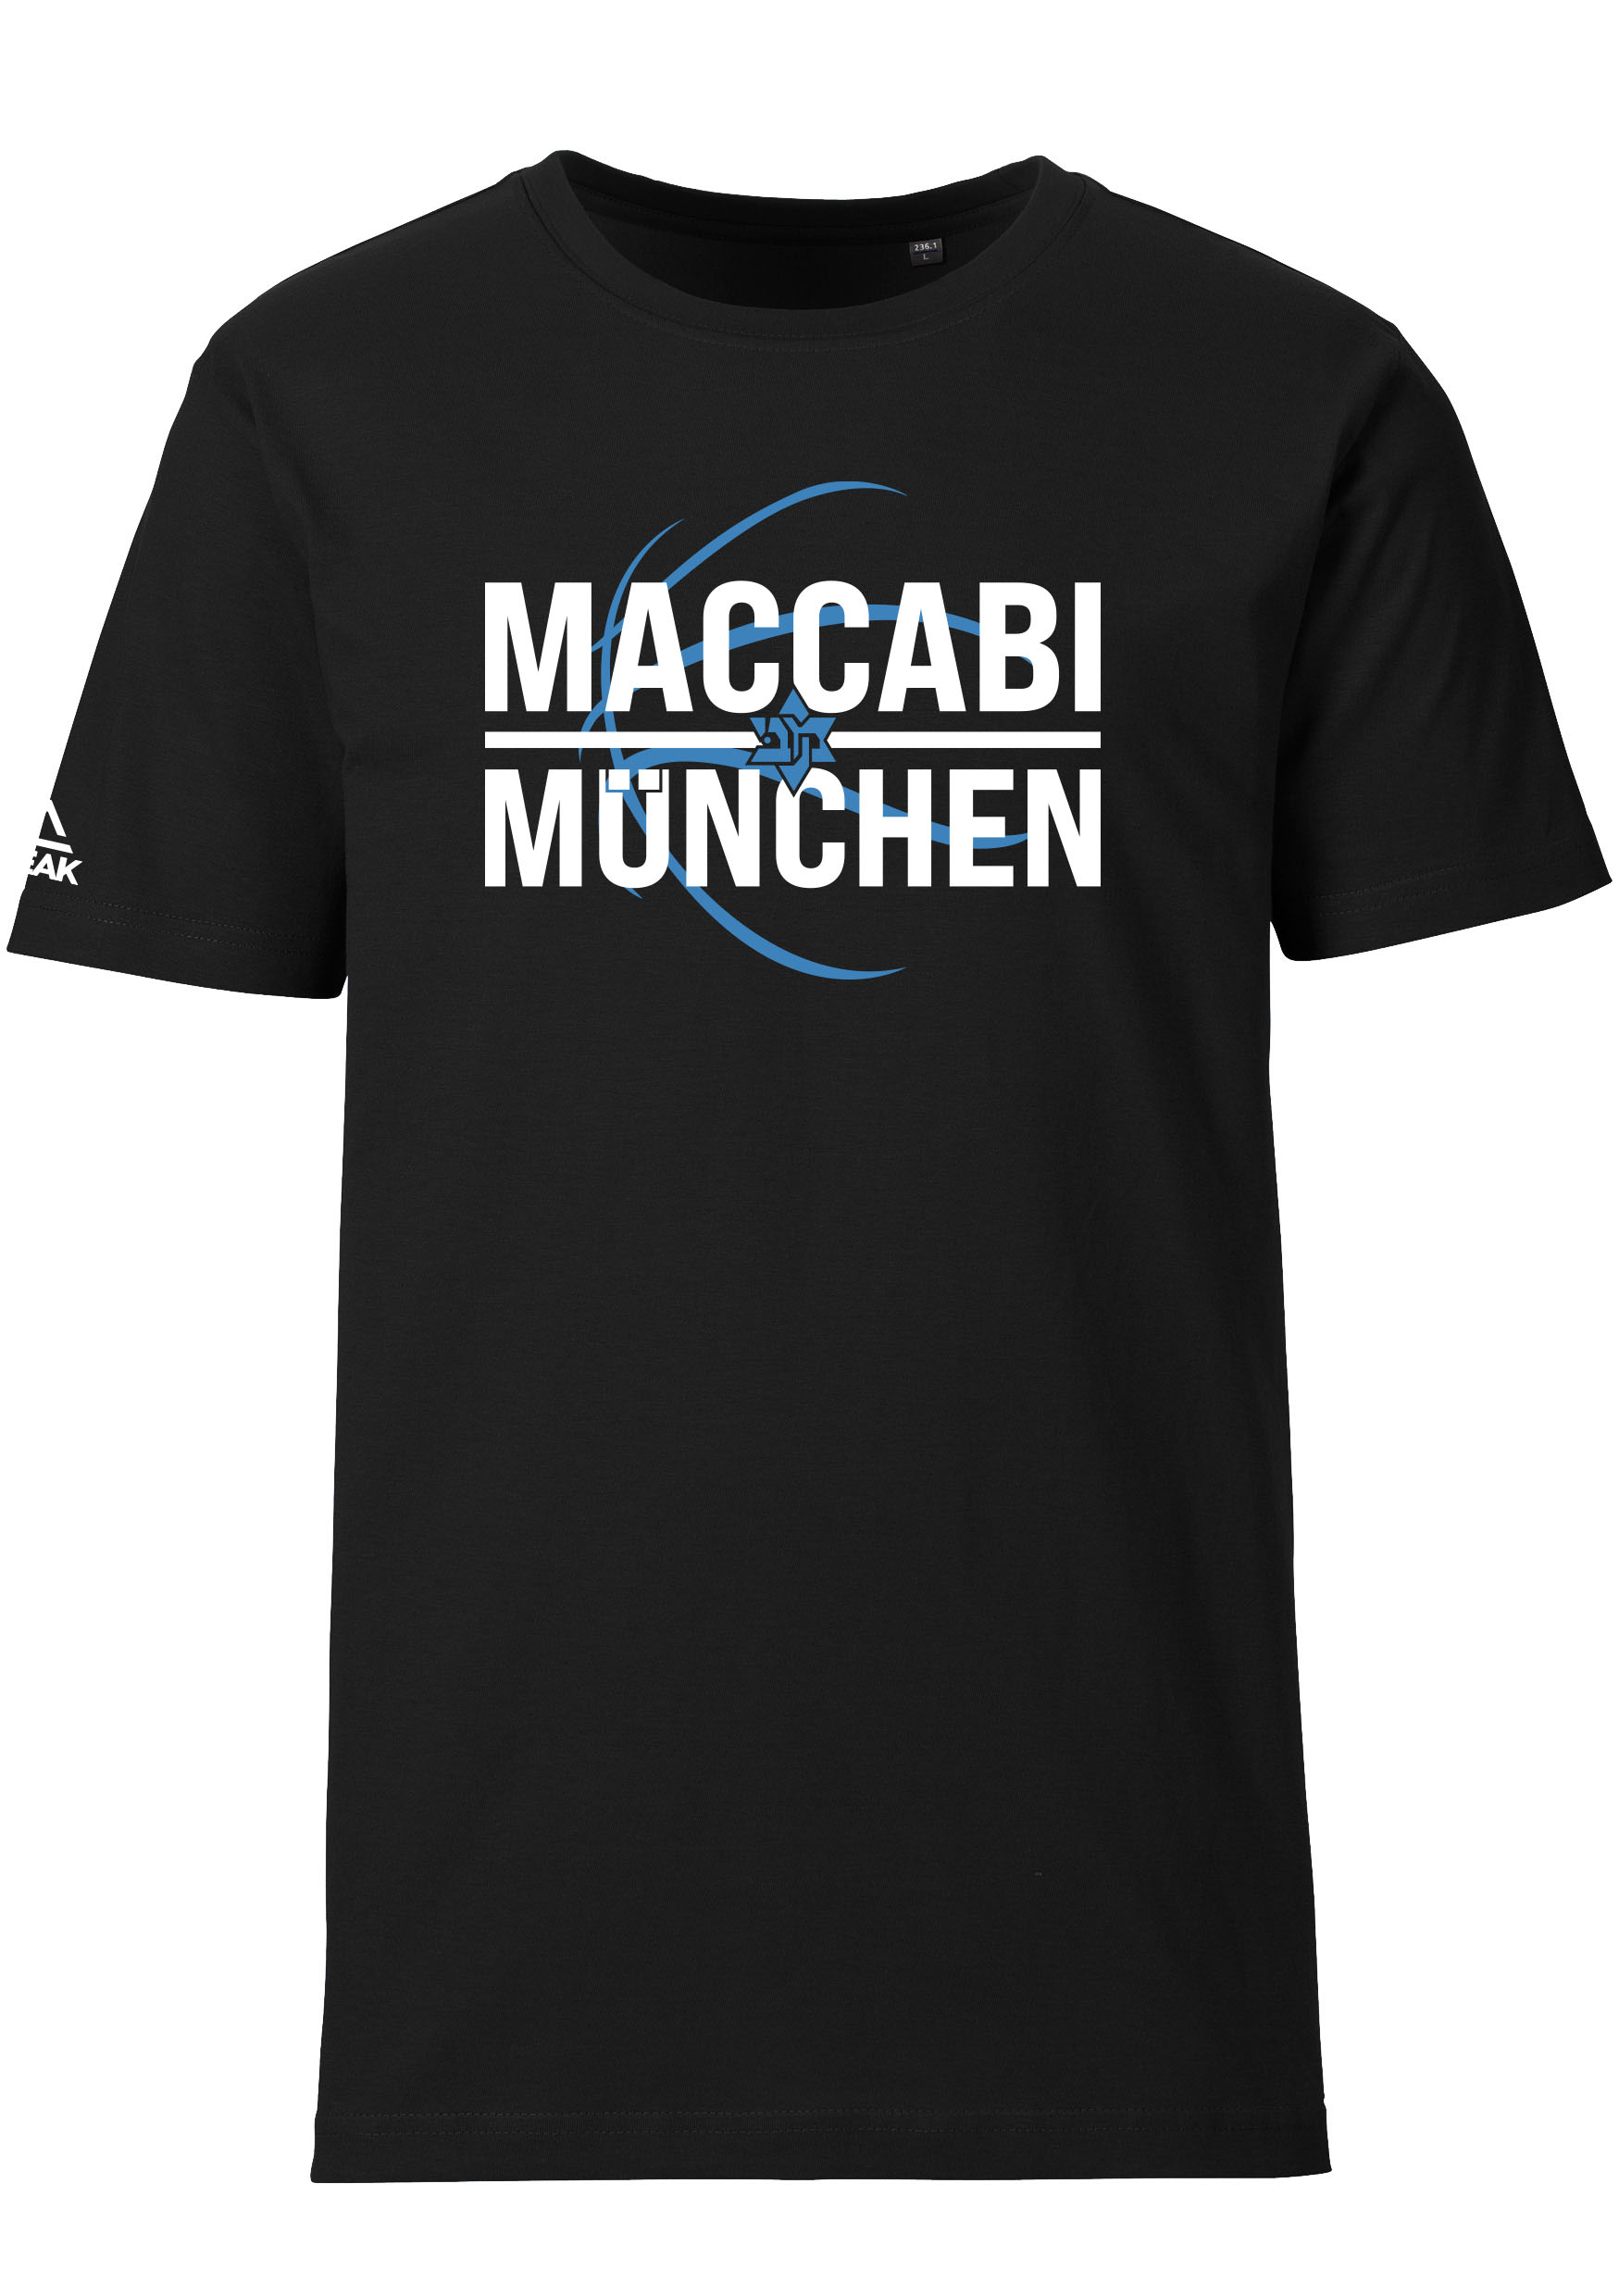 Maccabi München T-Shirt